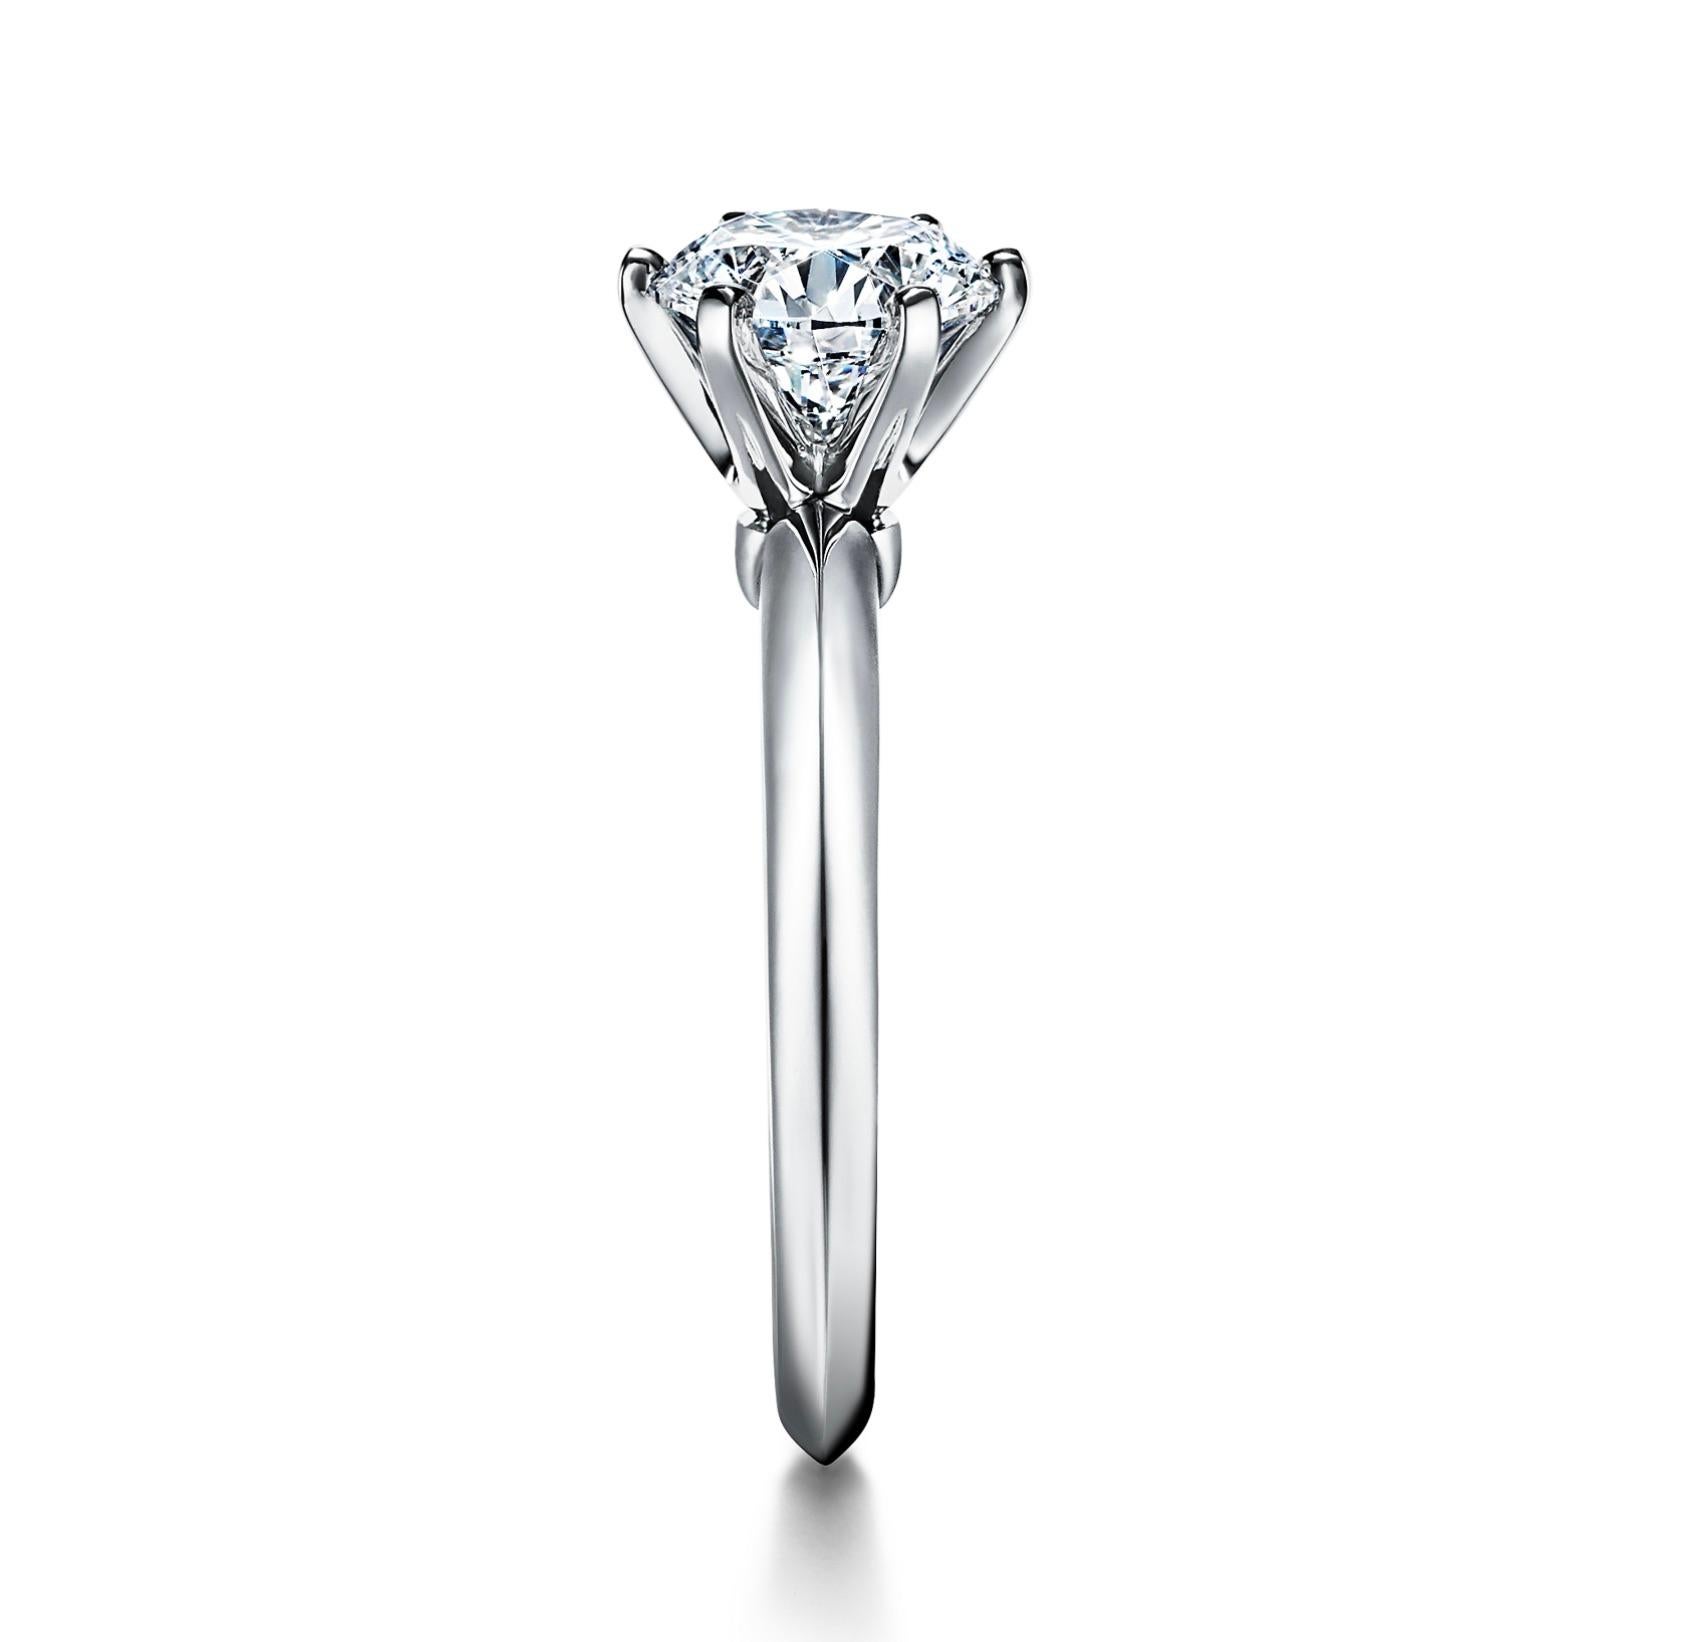 Diamant rond brillant de 1,51 carat D Flawless de Tiffany. 
Livré avec un certificat Tiffany et un certificat GIA #5141679551.
Peut être réglé de manière personnalisée, veuillez nous contacter pour plus d'informations.
Taille des canettes.